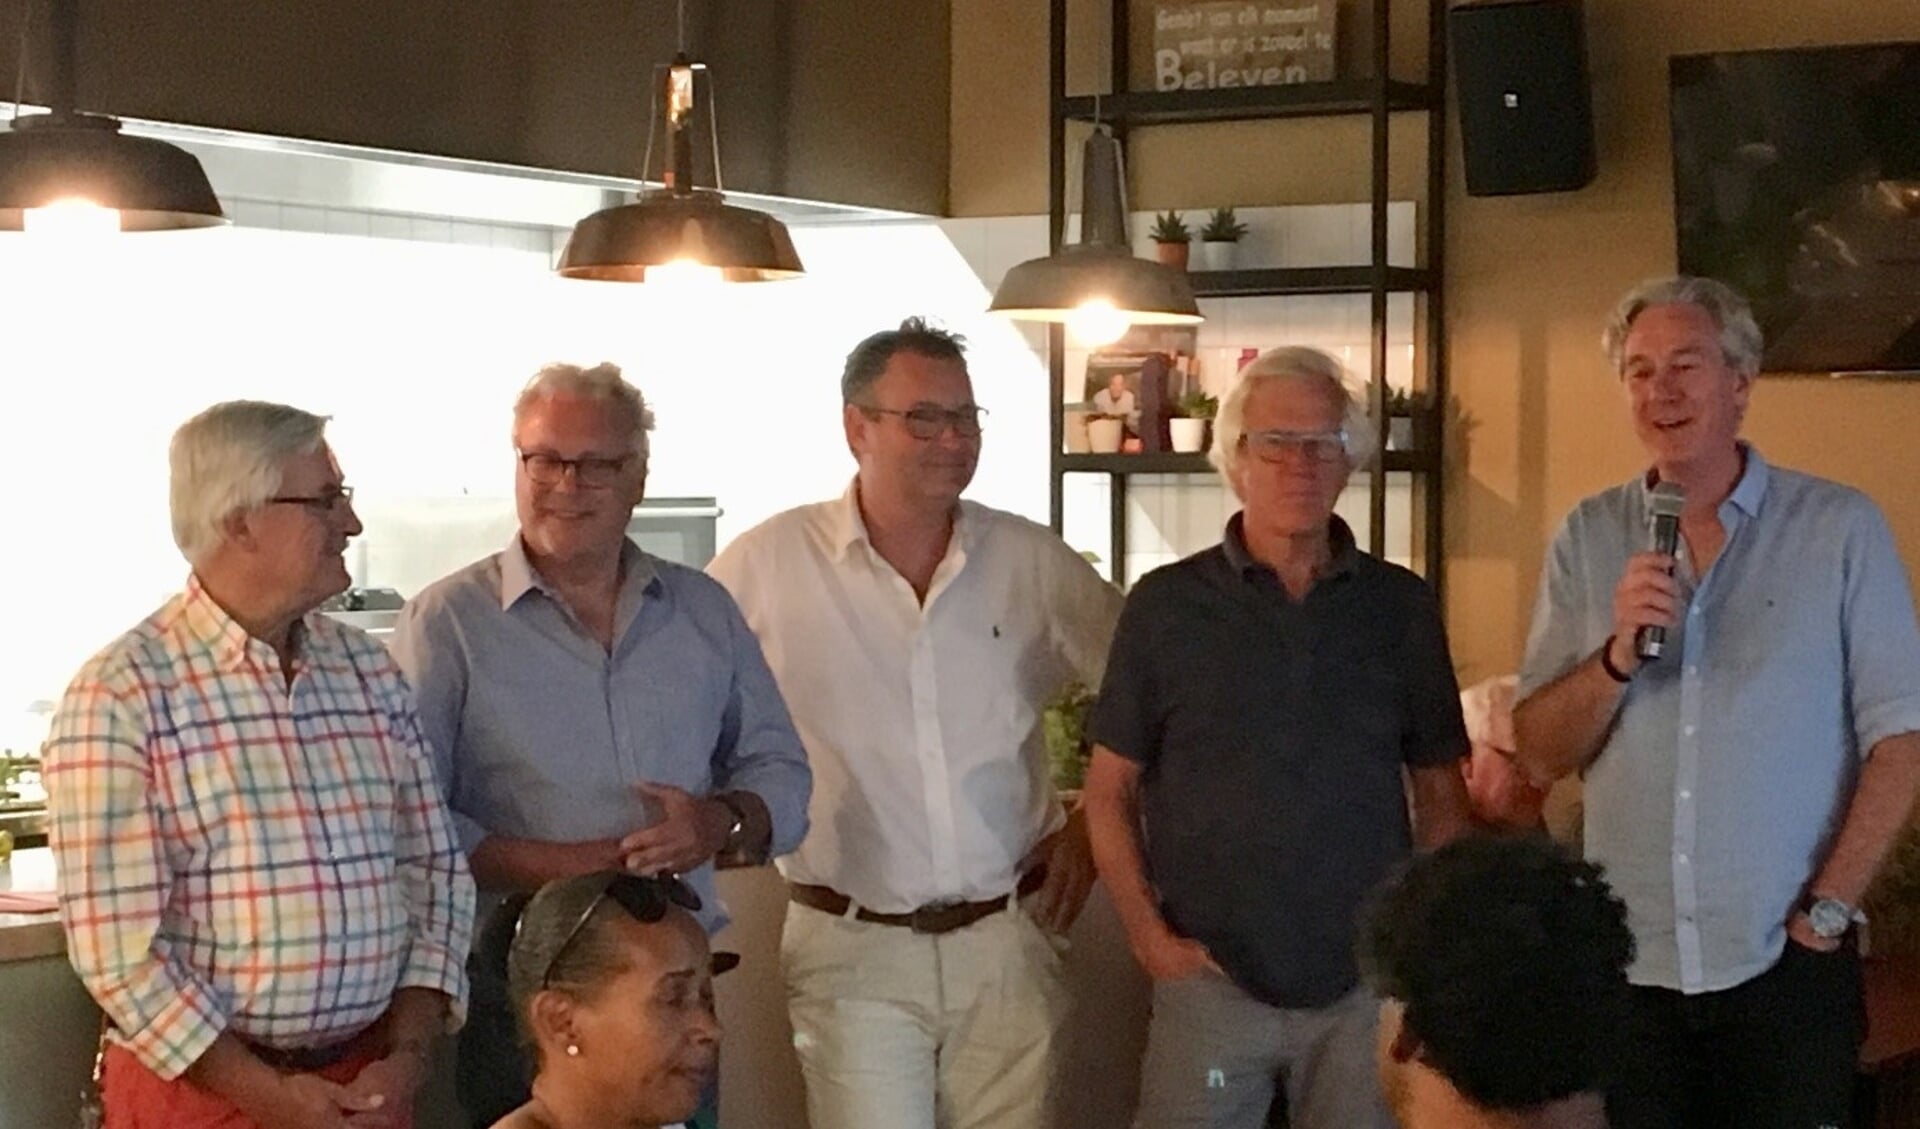 Het bestuur van Stichting OranjeRijk: v.l.n.r. Martin van Staveren, Gerrit Overmans, Norman van der Loop (secretaris), Nico den Hollander (penningmeester) en Cock de Jong (voorzitter).